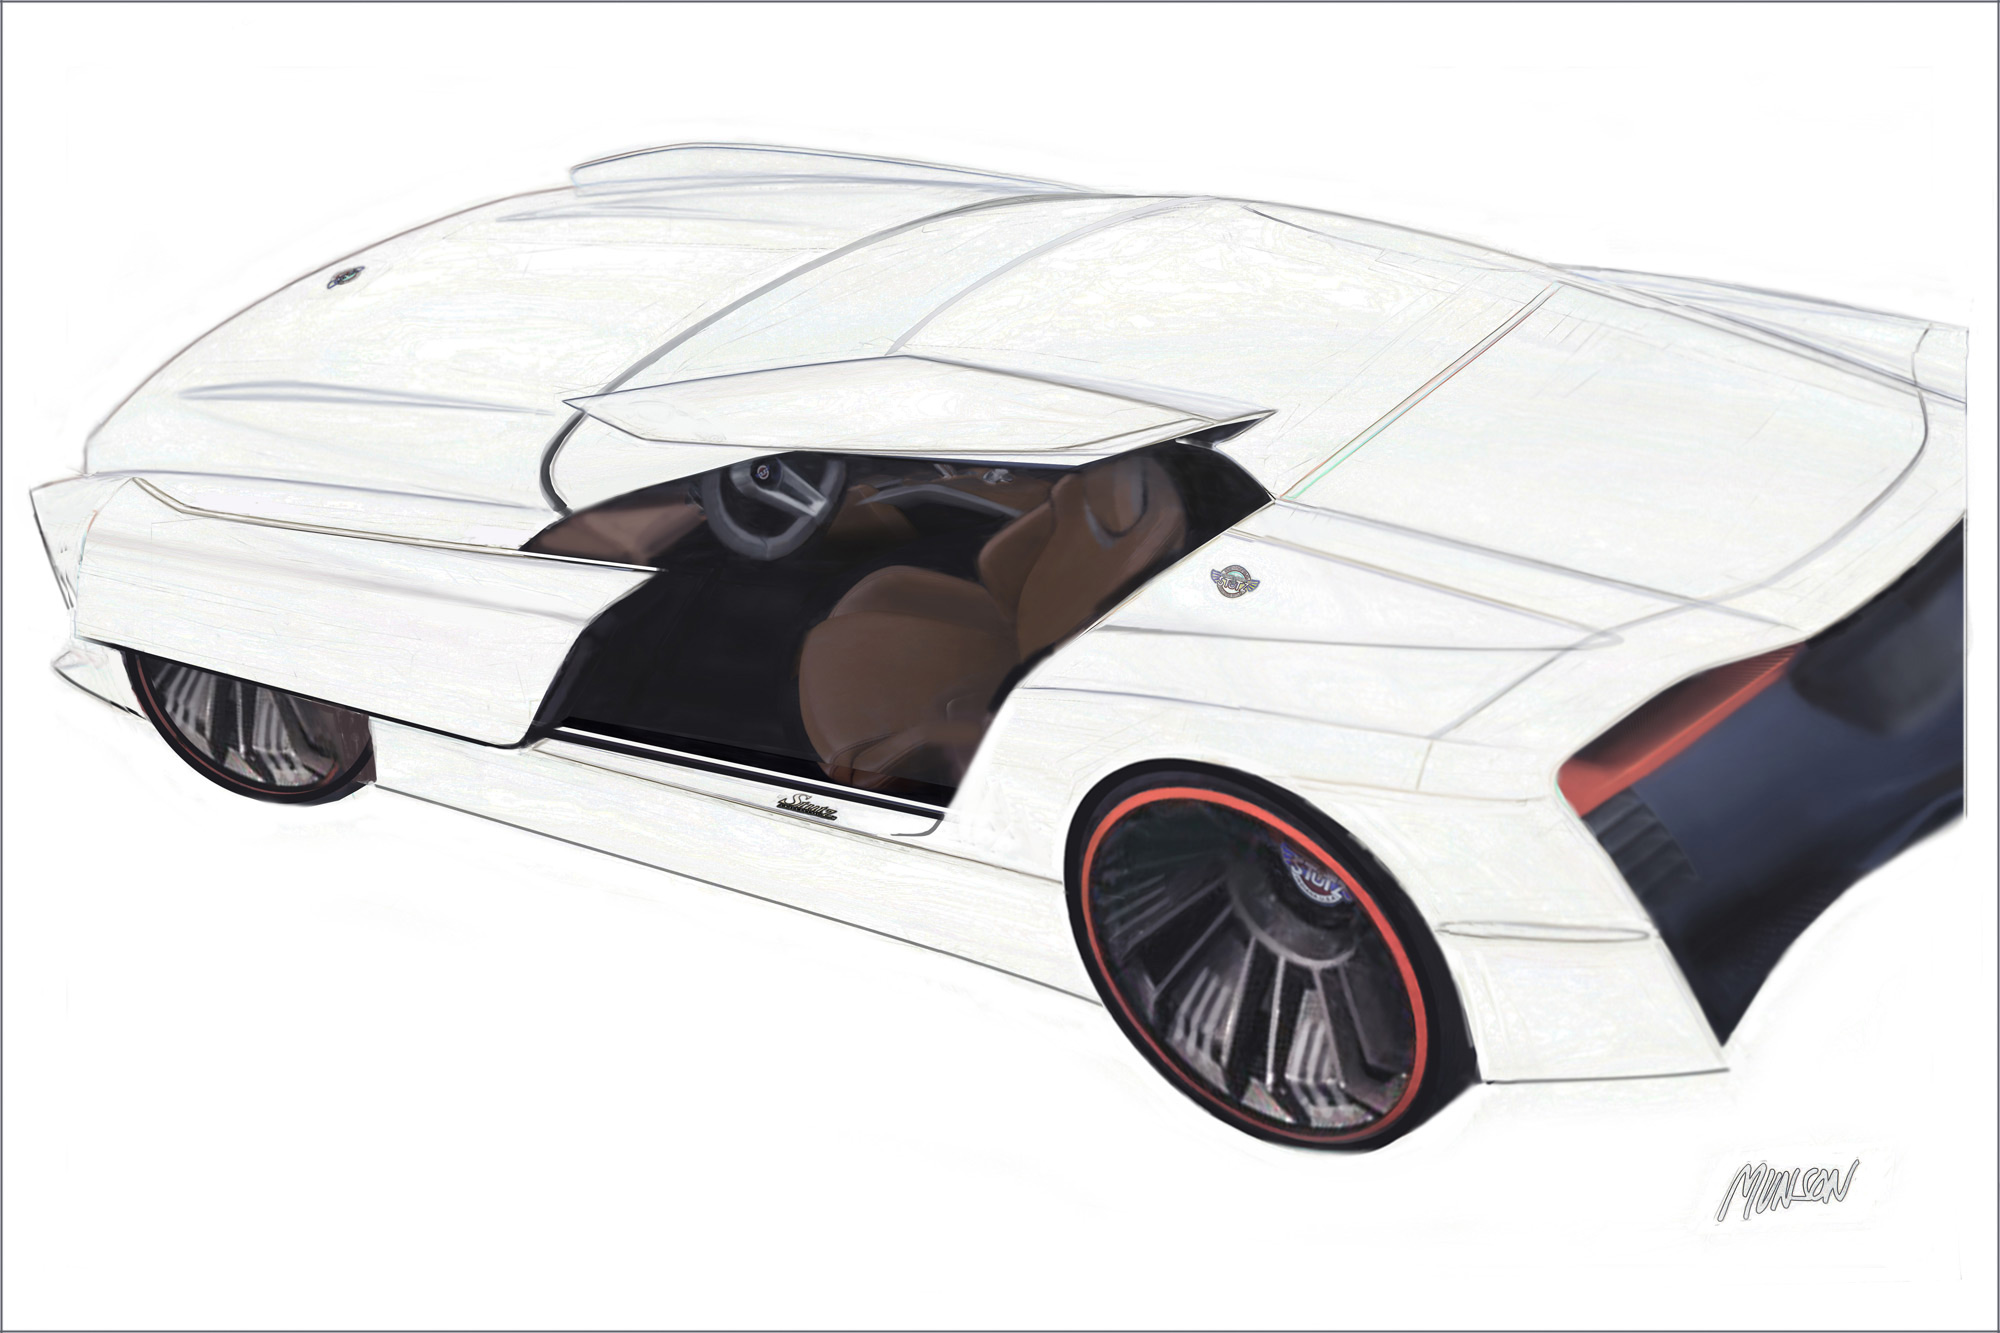 Cadillac coupe exterior concept